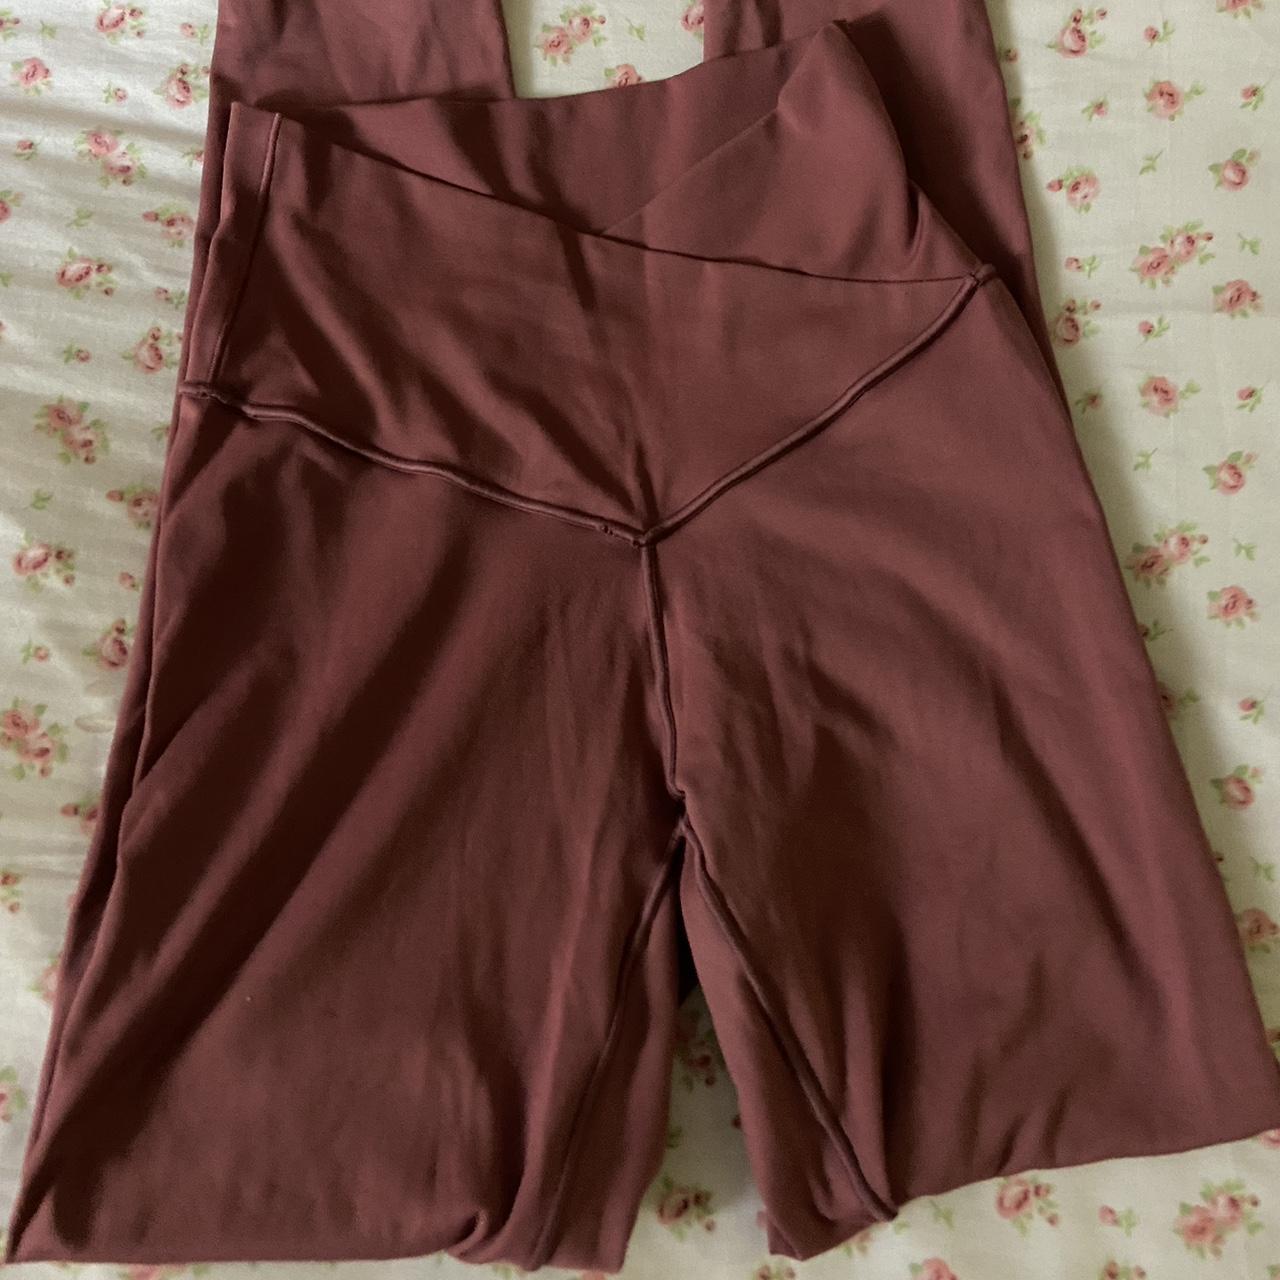 Aerie chocolate brown Offline leggings - Depop